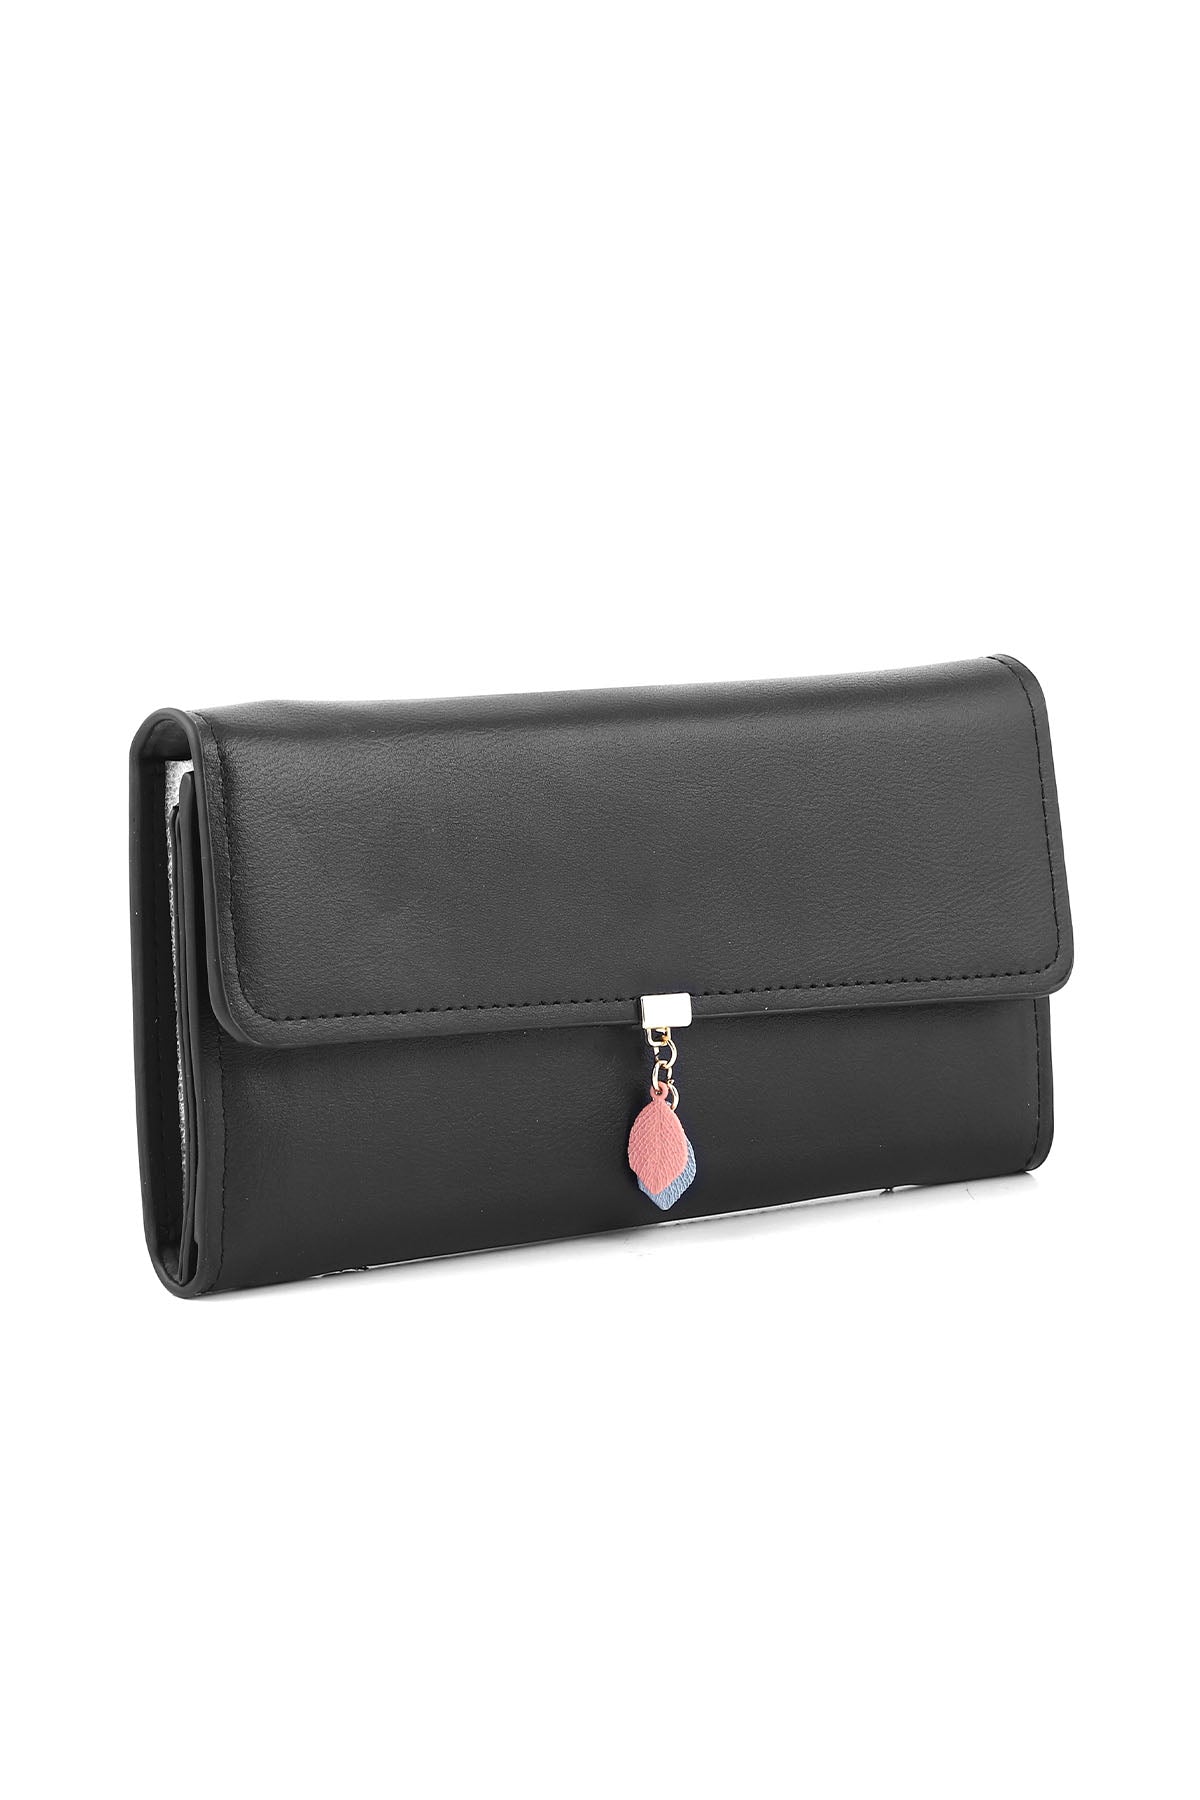 Wristlet Wallet B26033-Black